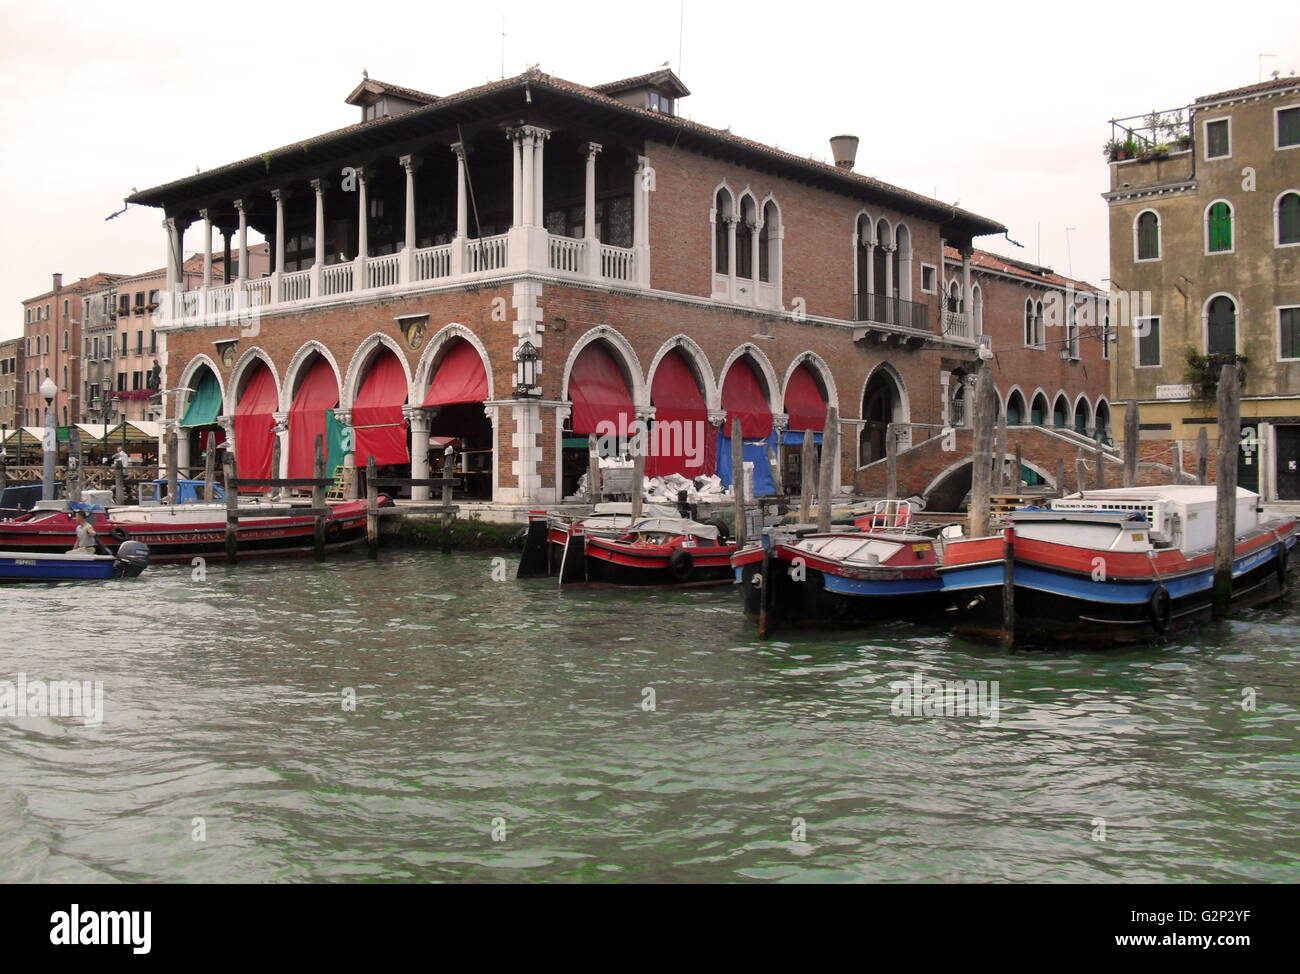 La Pescheria di Rialto, sul Canal Grande di Venezia, Italia. Il Ponte di Rialto è il centro finanziario e commerciale di Venezia. Il Pecheria è un palazzo lungo si tratta di banche. Foto Stock